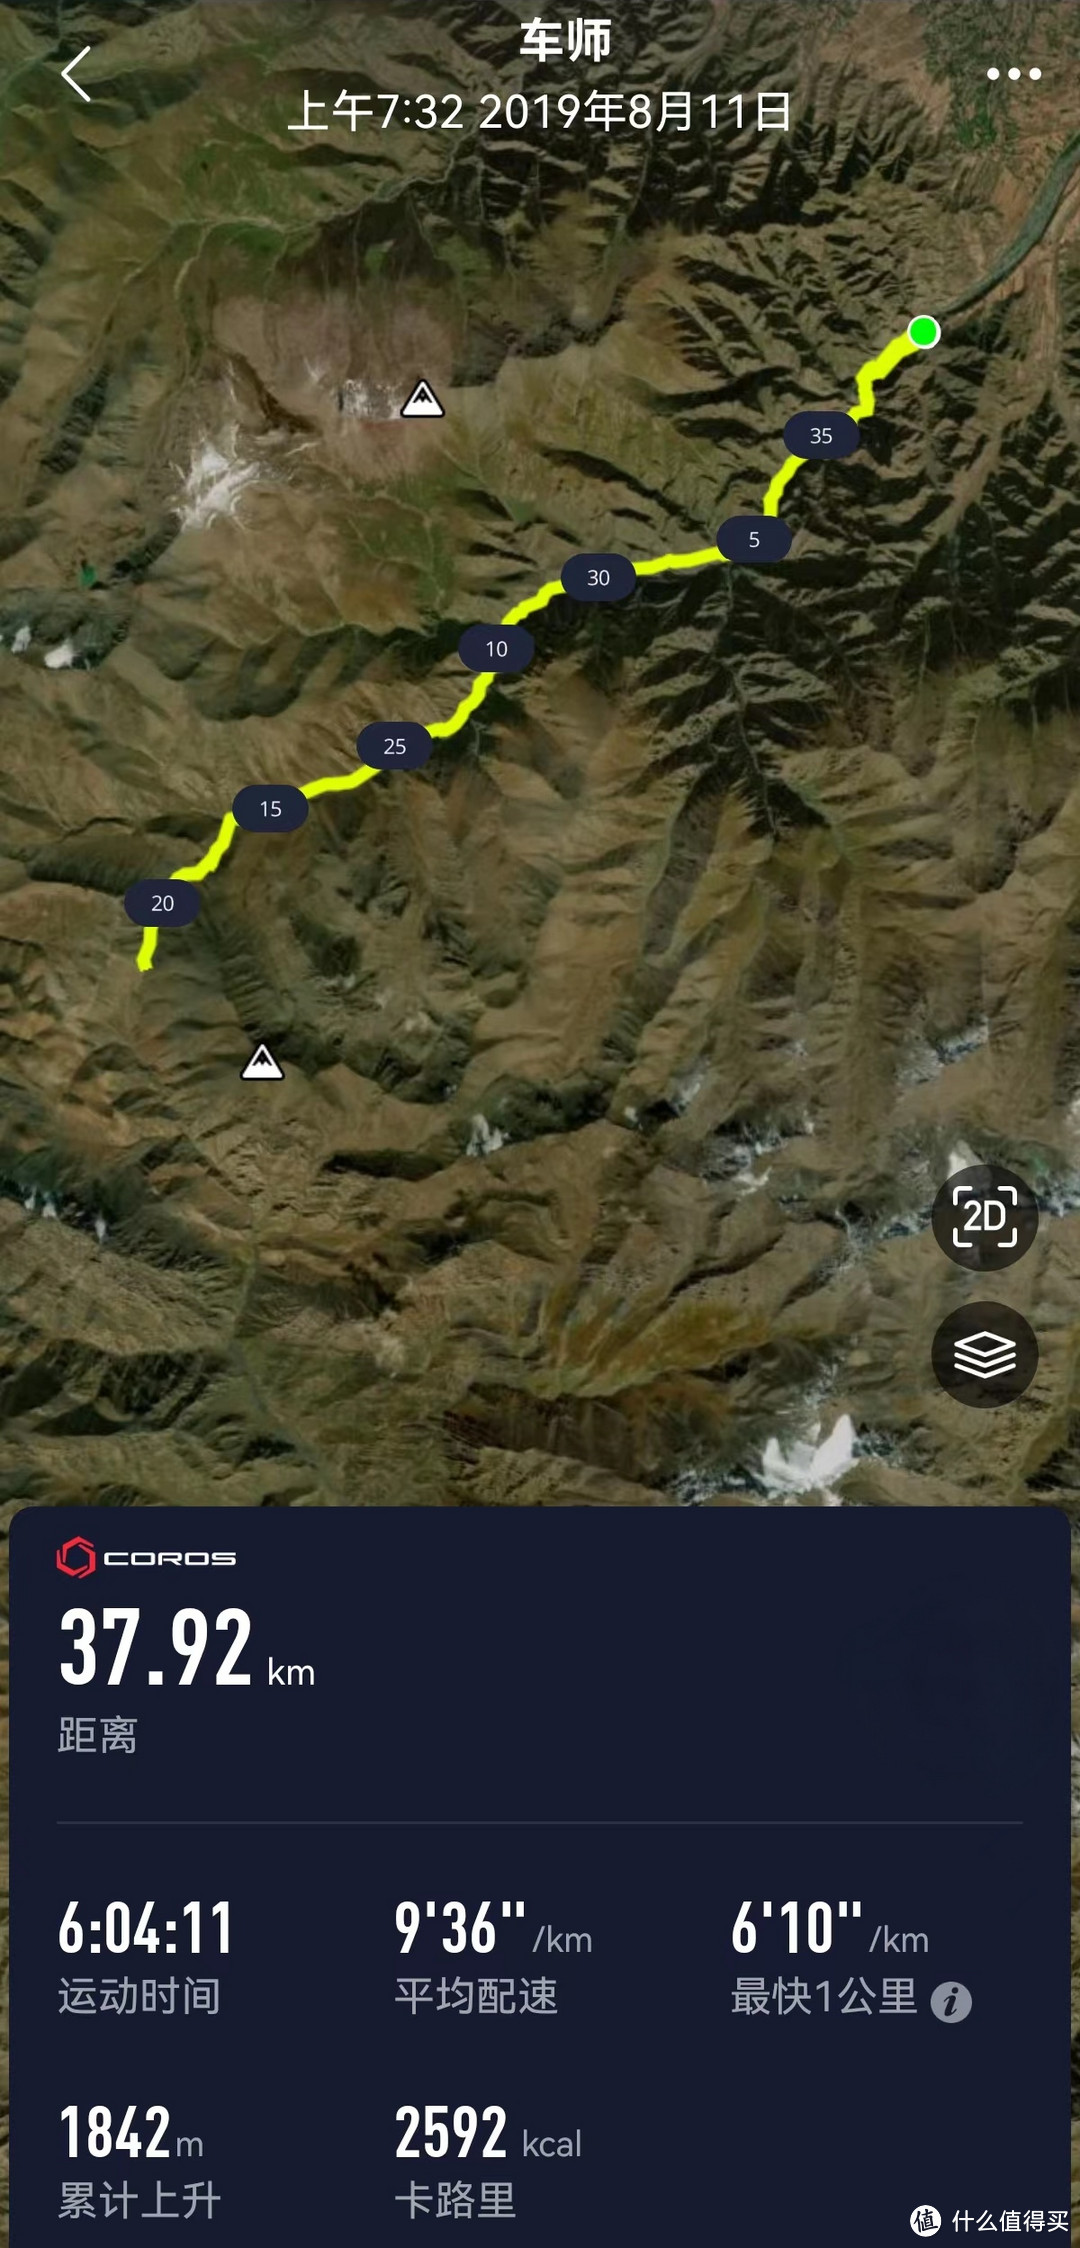 19年车师古道越野赛路线：野狼谷—琼达坂往返（高度落差1768米，赛道往返36公里）